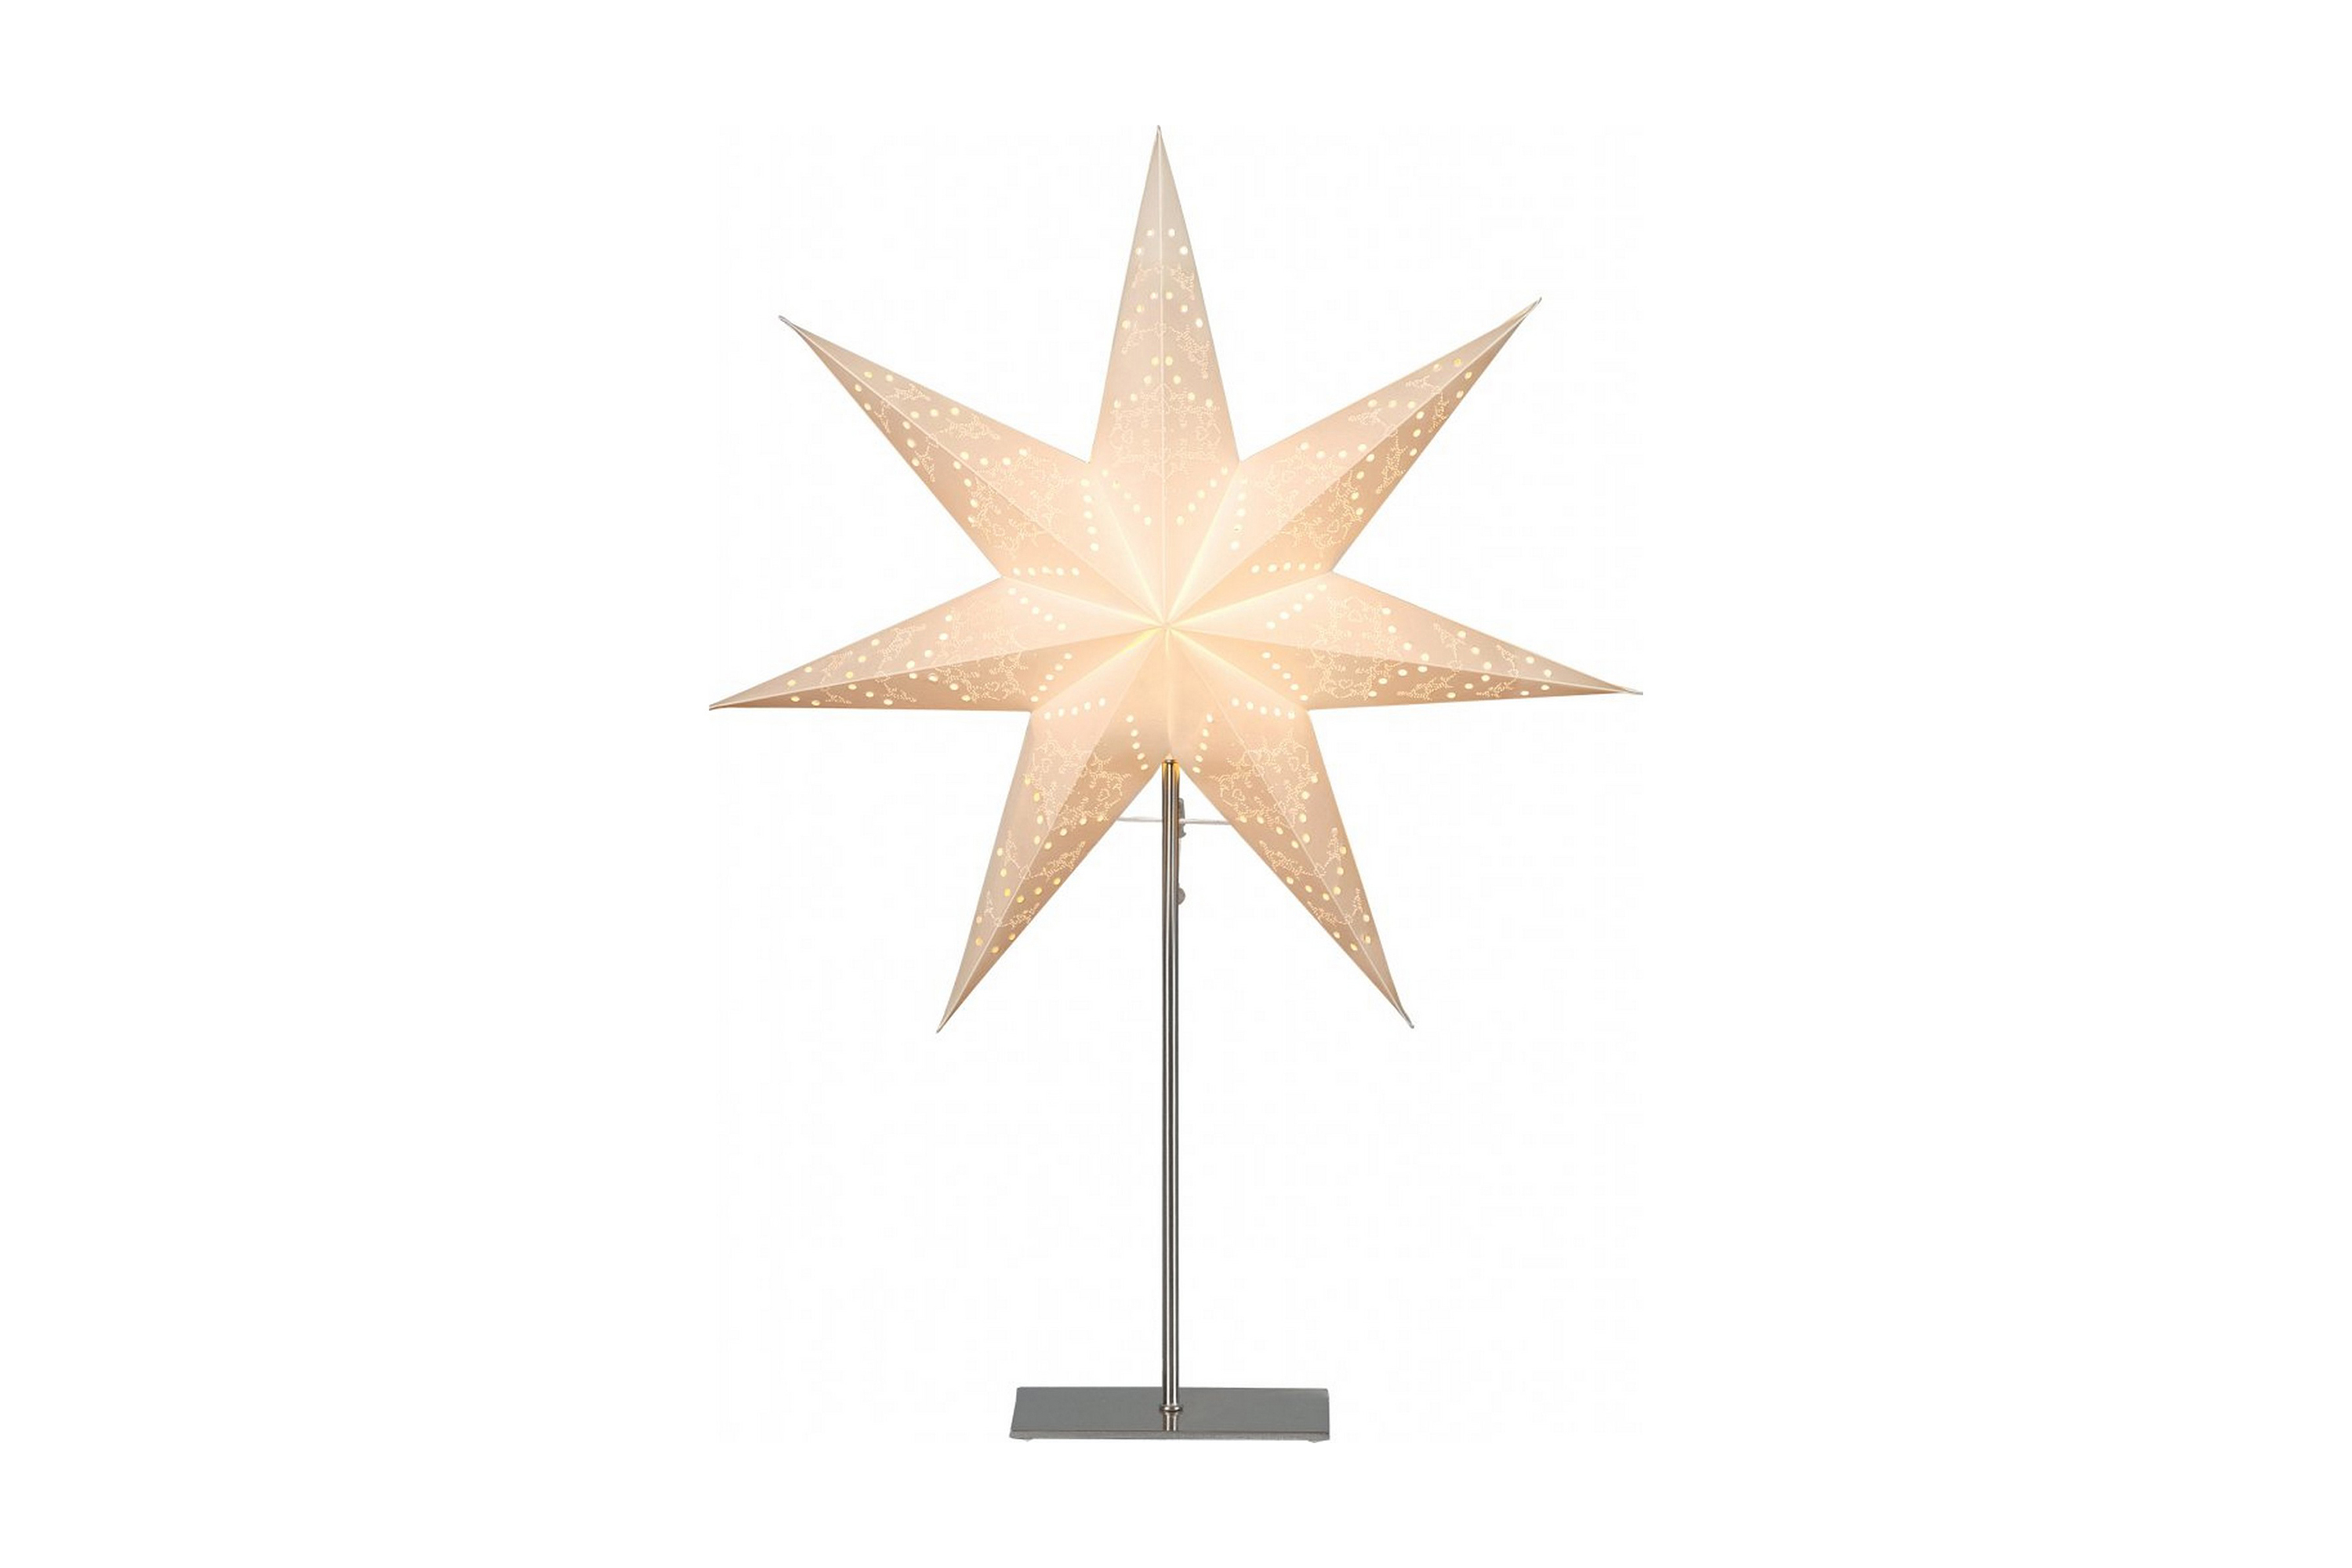 Sensy bordsstjärna 78cm – Star Trading